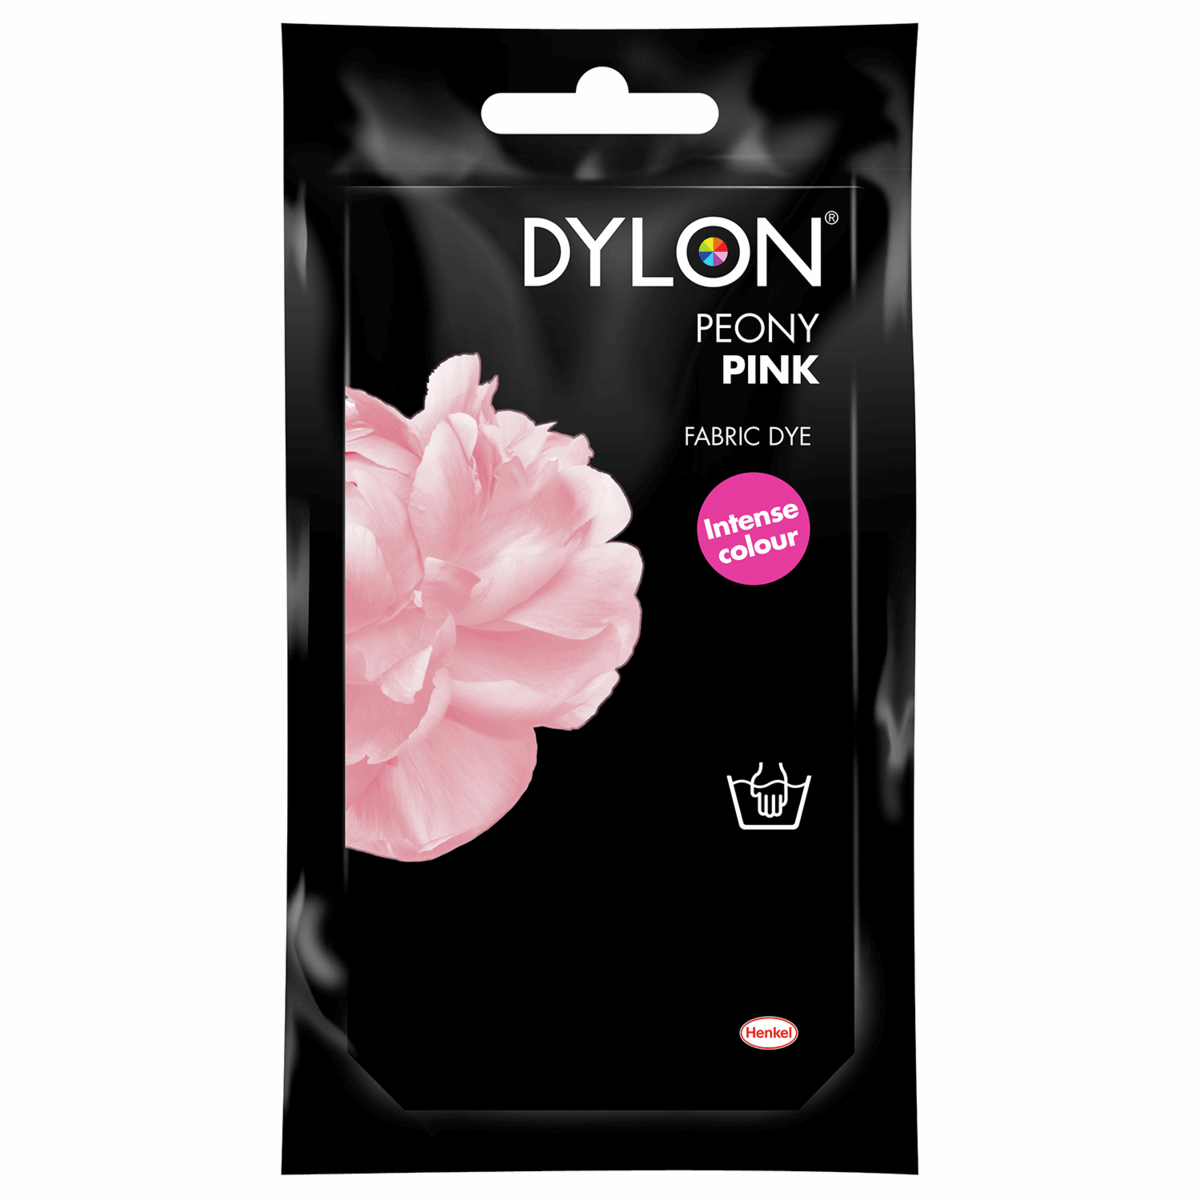 Dylon - Permanent Fabric Dye